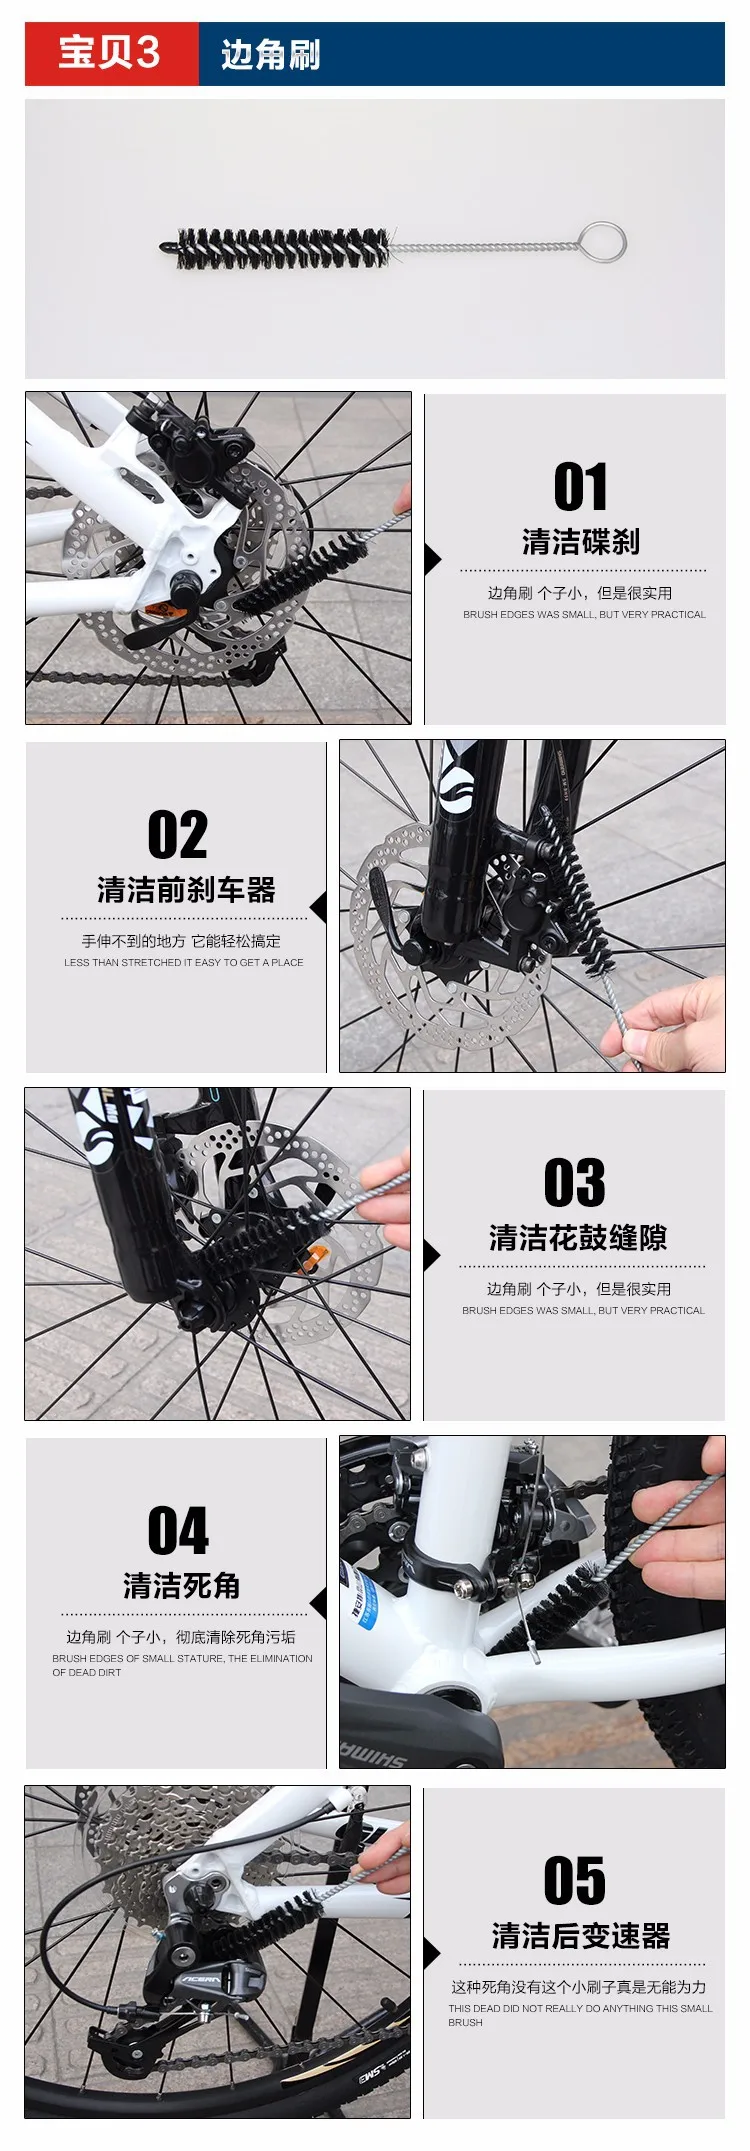 CYLION очистка велосипеда Наборы инструмент для чистки велосипеда упаковка велосипедная щетка для шин цепь для дорожного велосипеда мойка тормозной очиститель дисков набор инструментов